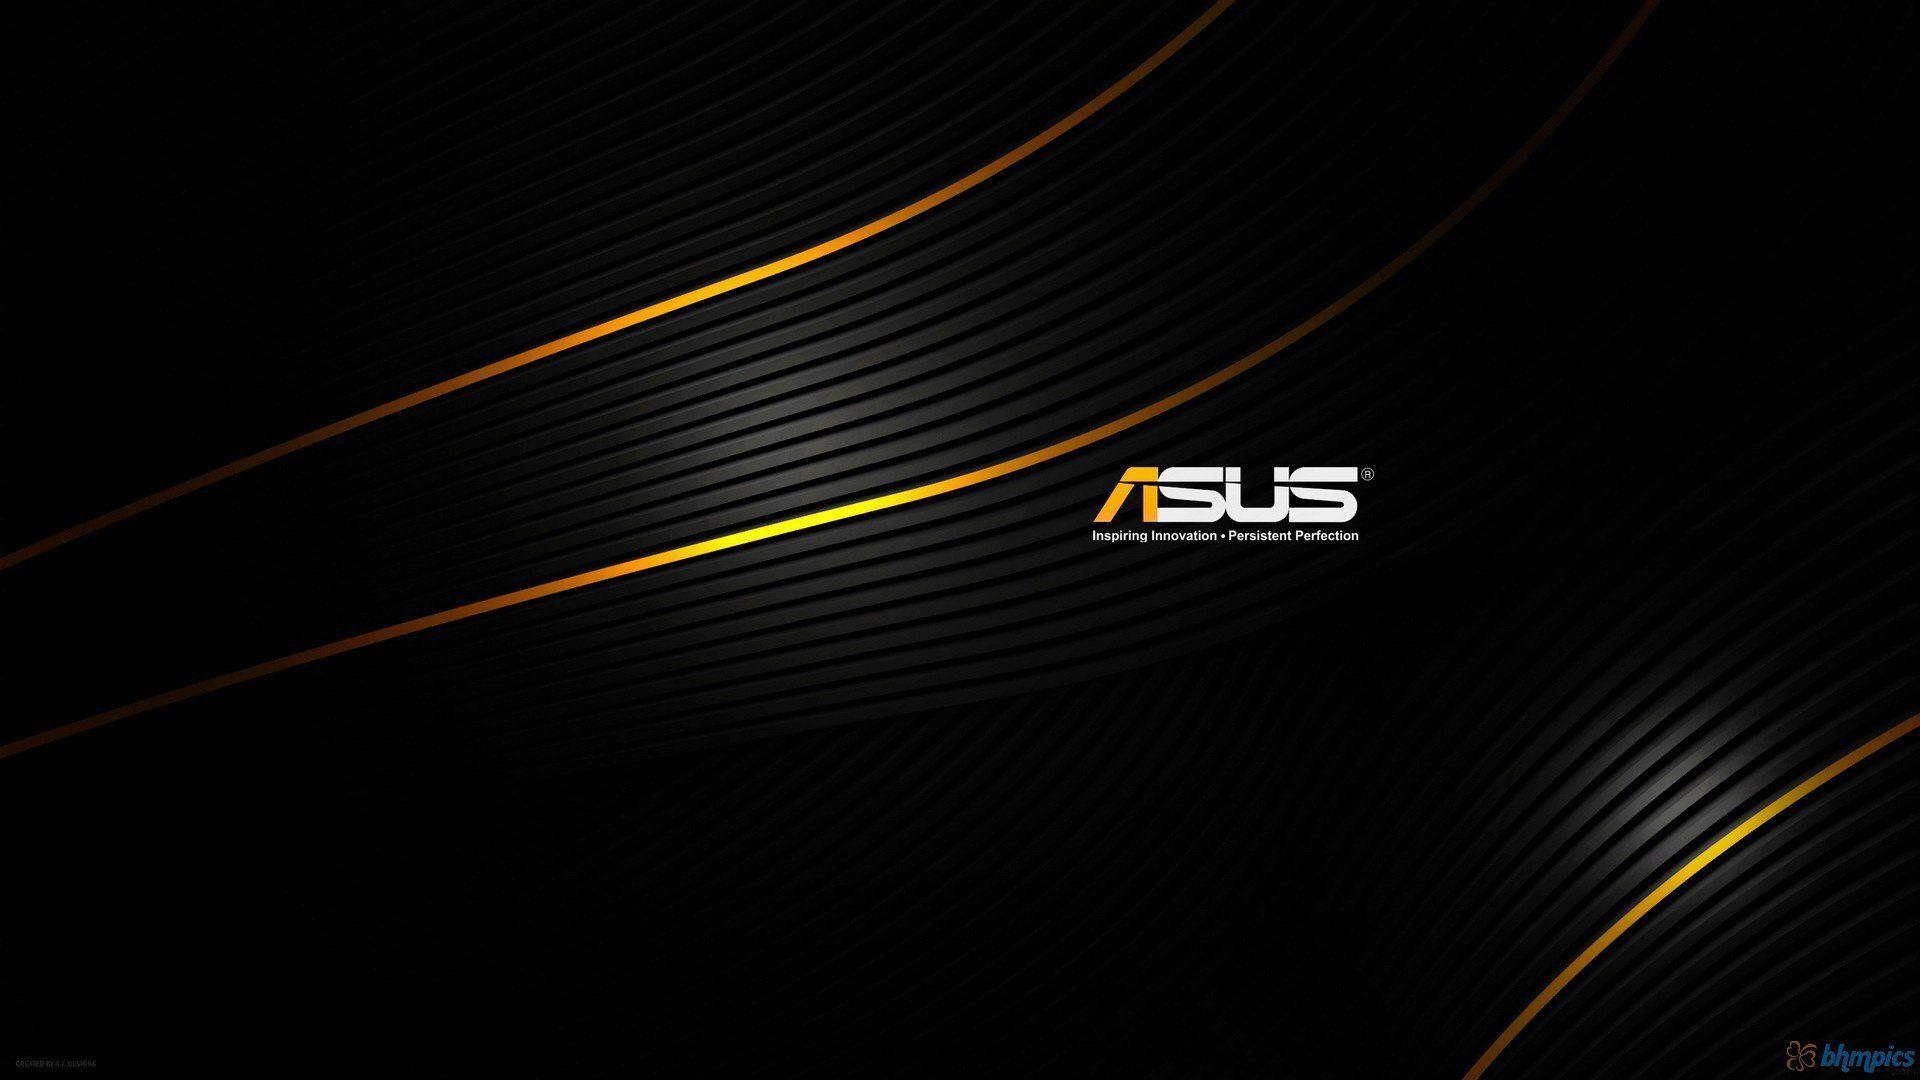 Asus Logo - ASUS Logo Wallpapers - Wallpaper Cave